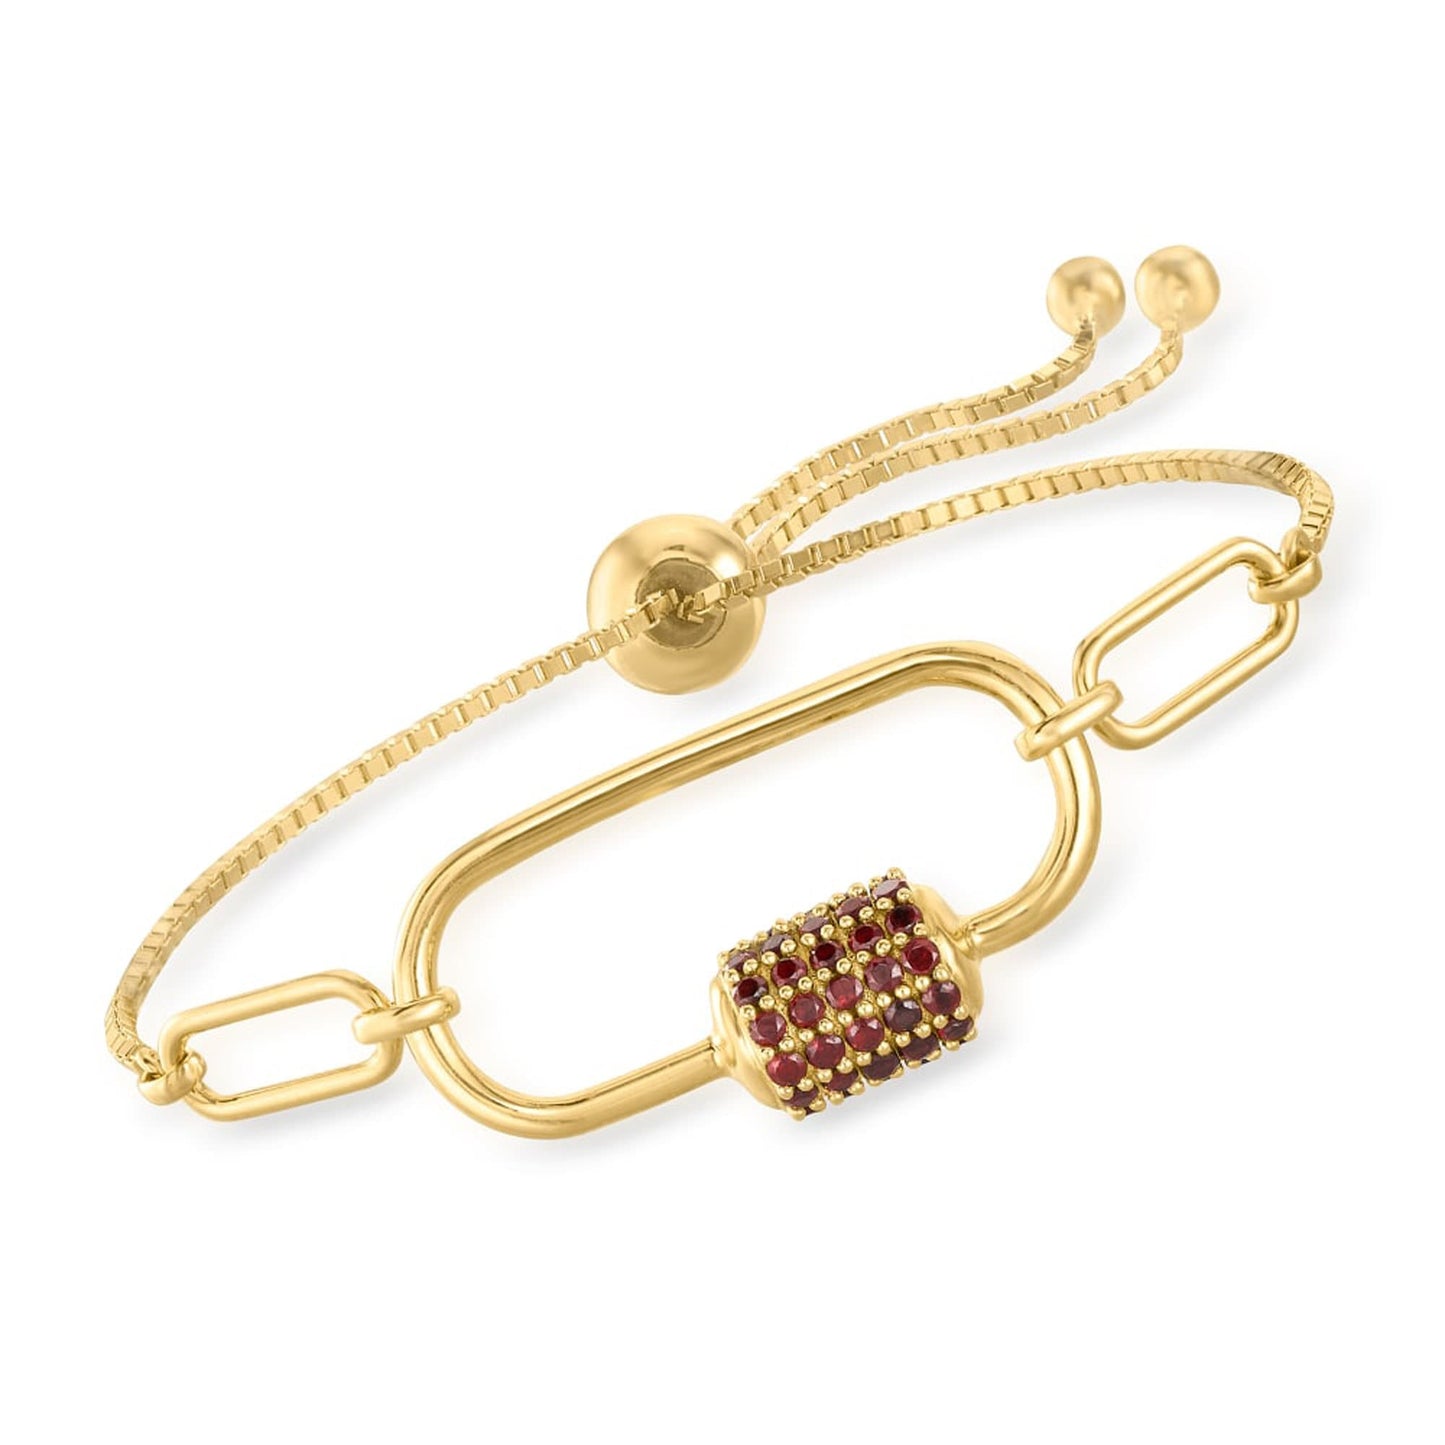 925 Sterling Silver Paper Clip Link Bolo Bracelet Natural Red Garnet Gemstone Bracelet, Gold Plated Bolo Bracelet, Fine Jewelry,Gift For her